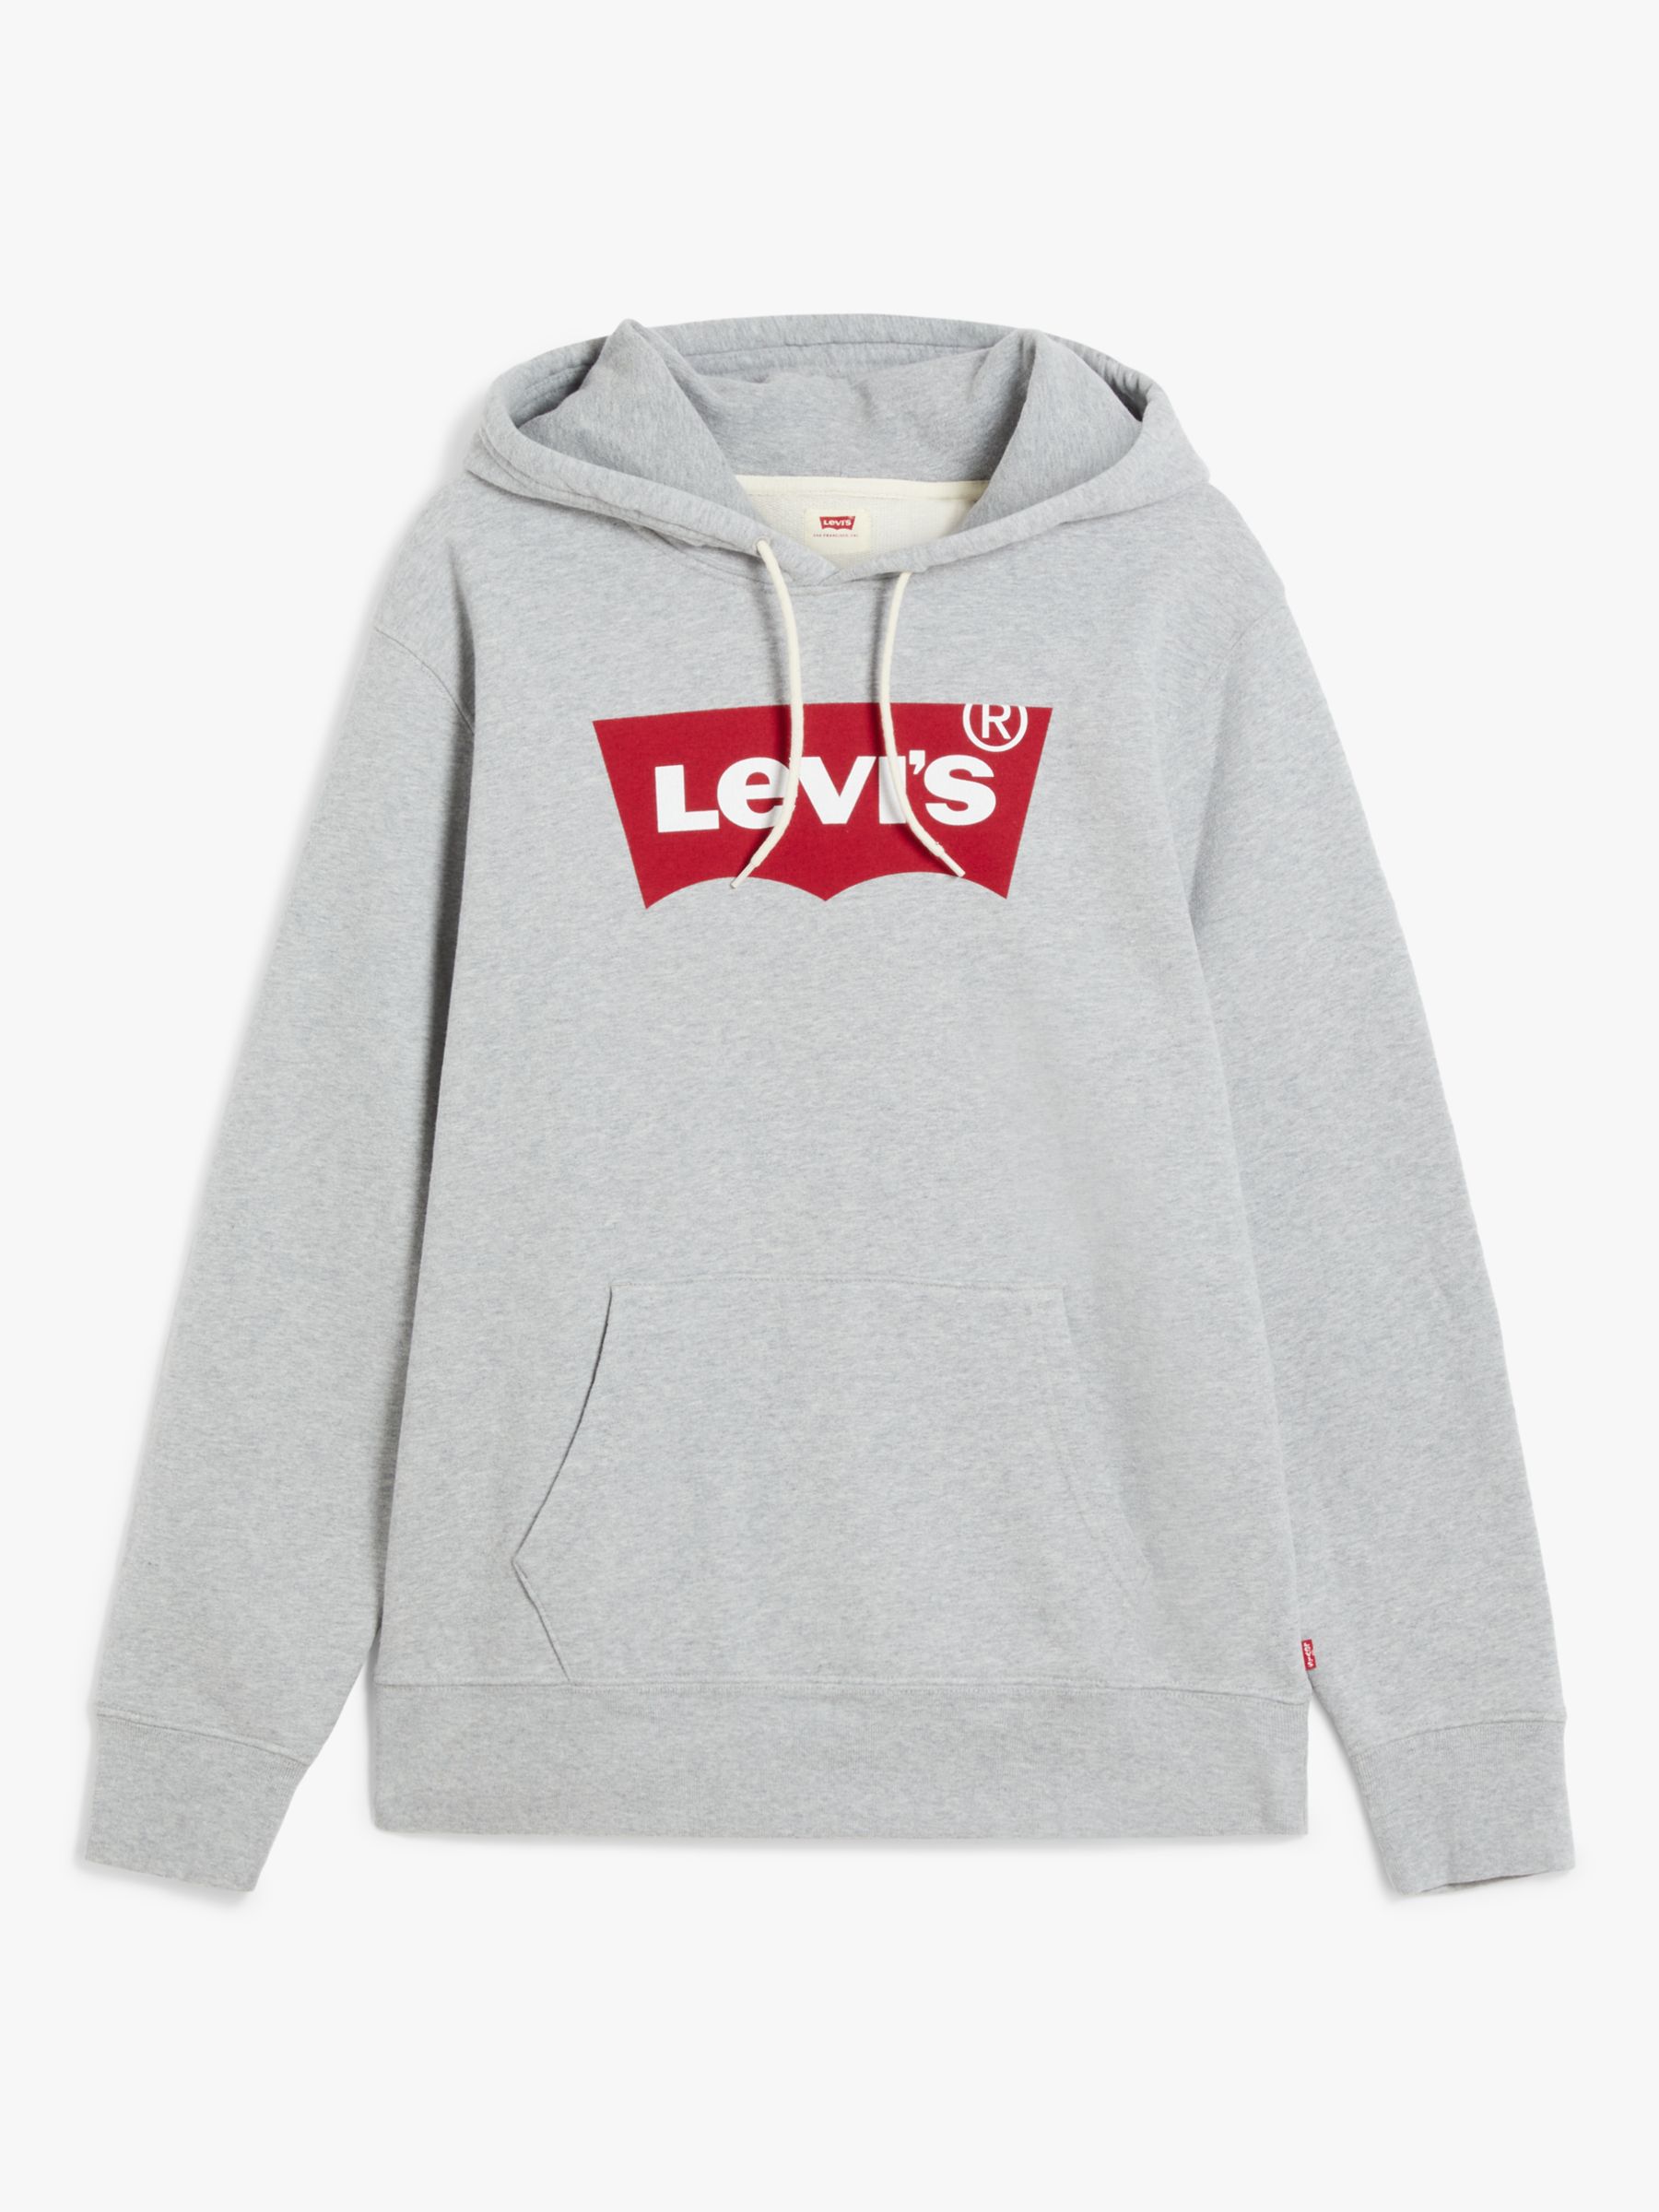 Levi's Graphic Logo Hoodie